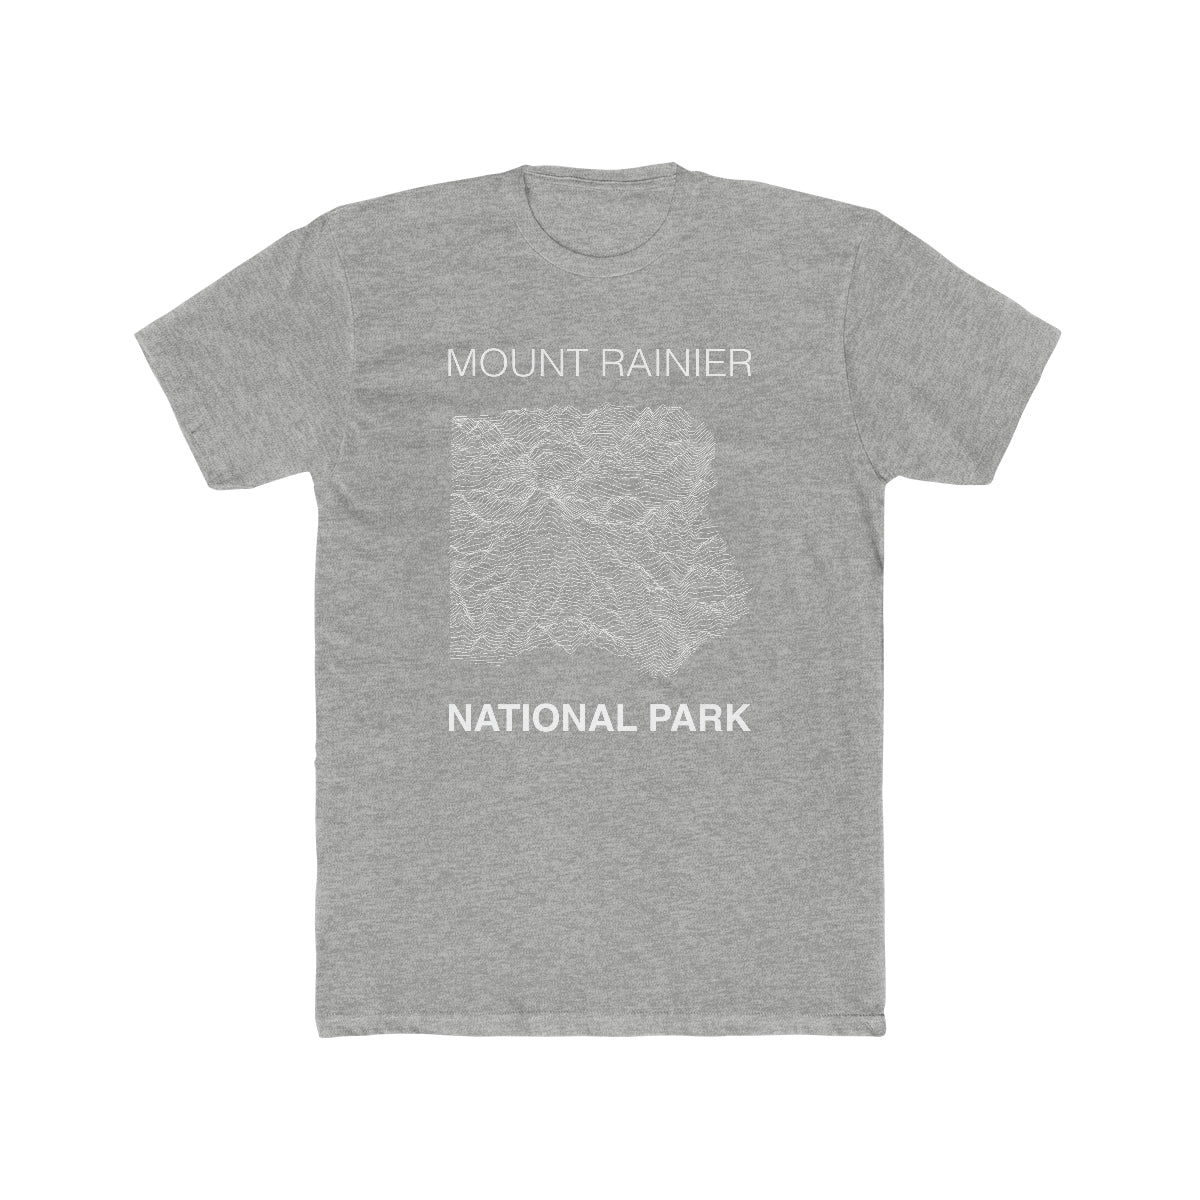 Mount Rainier National Park T-Shirt Lines